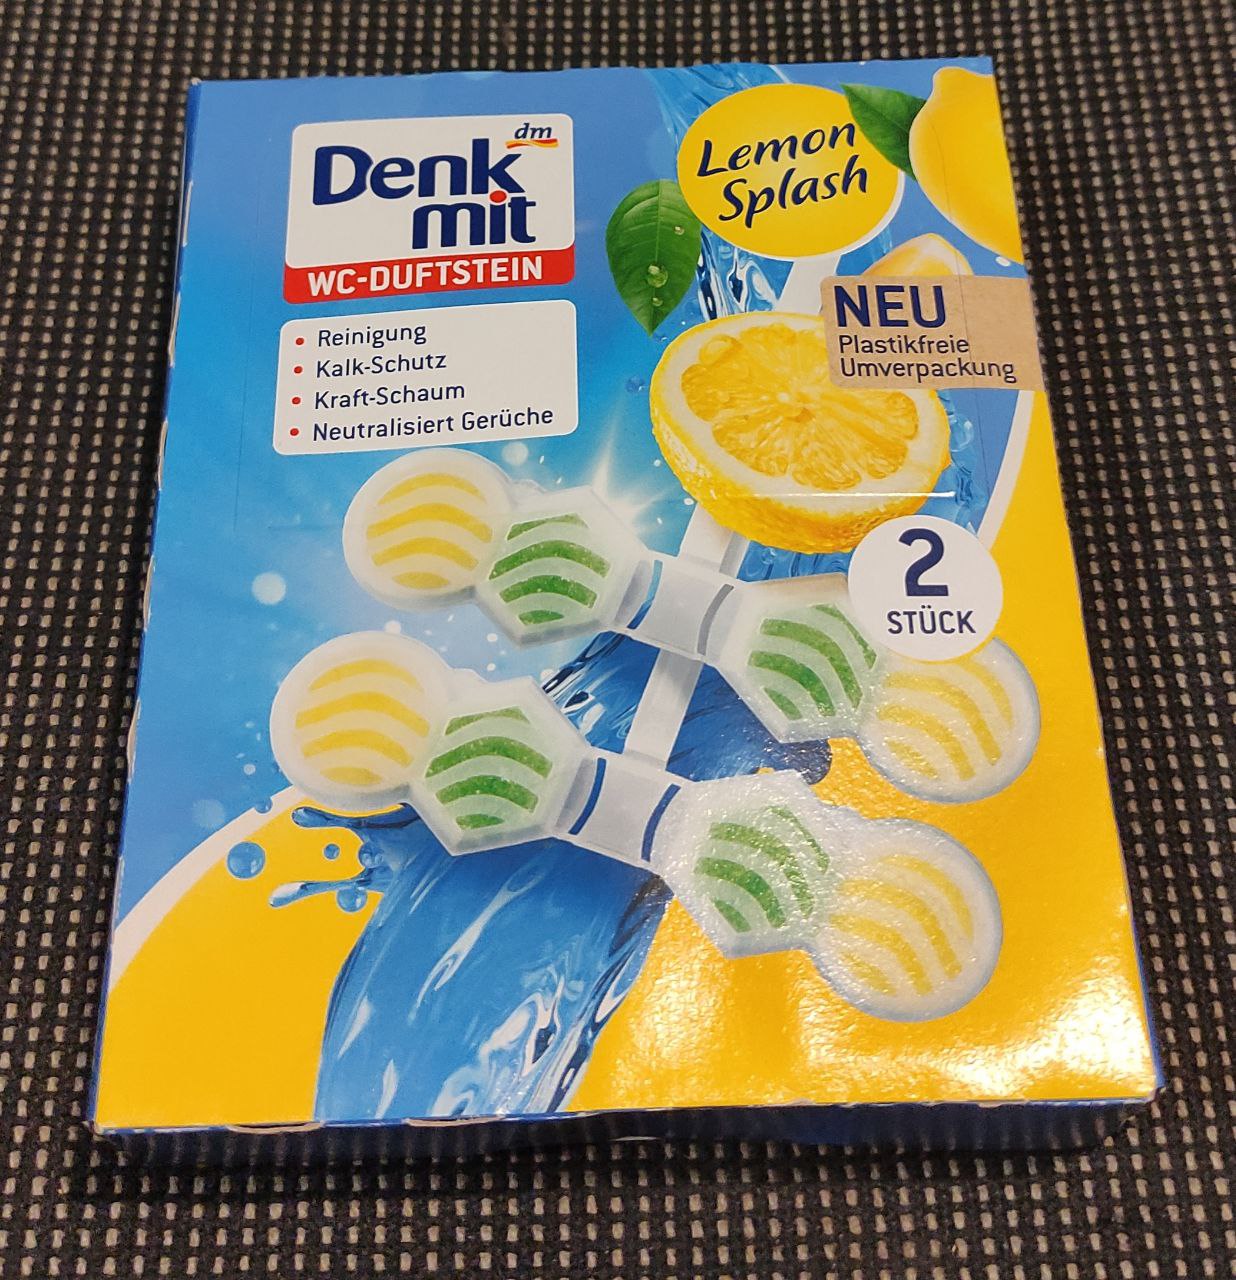 dm-053 Lemon Splash освежитель для унитаза